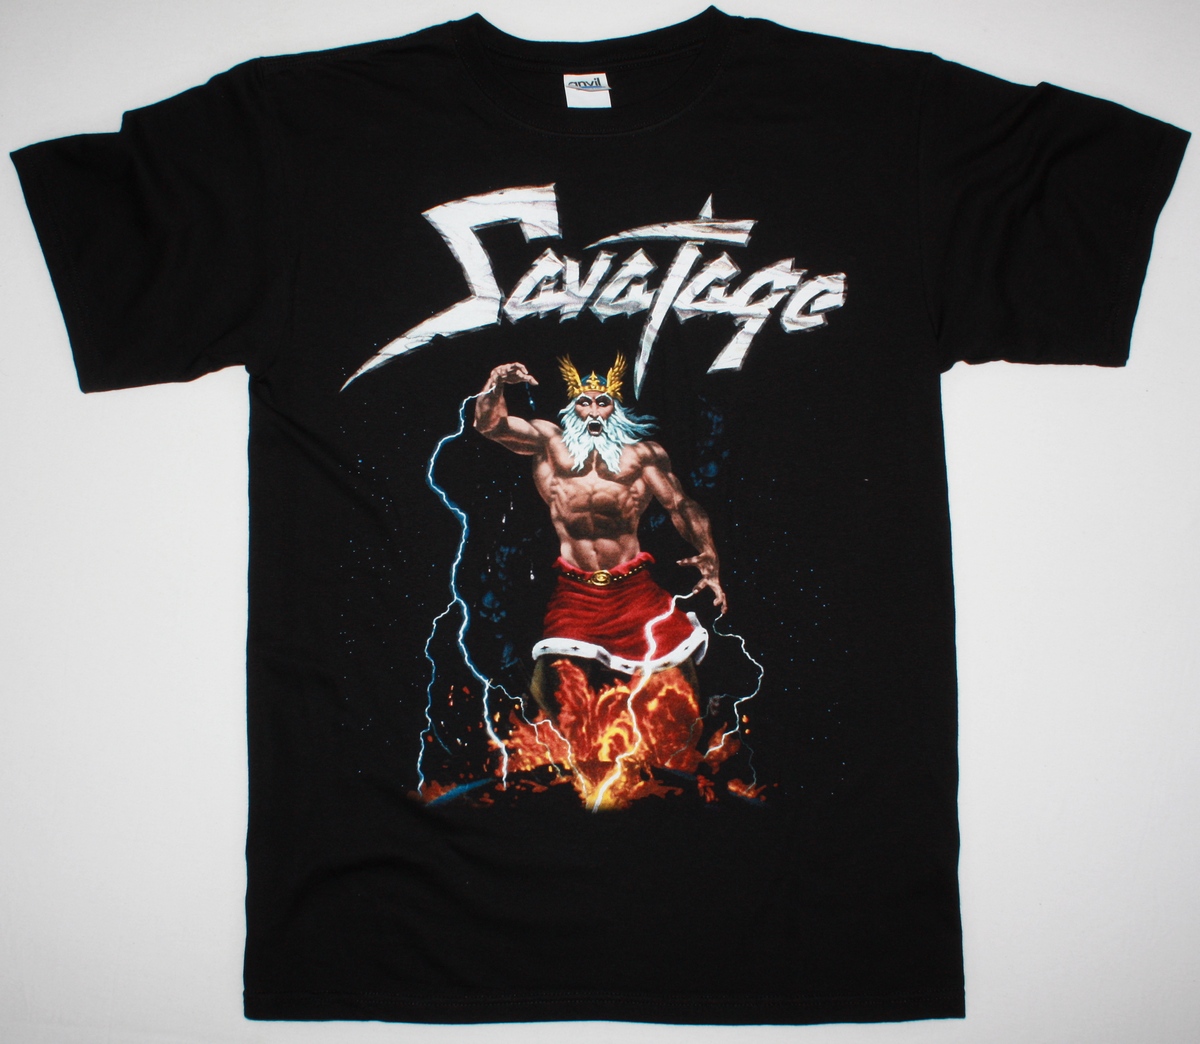 Rock DEVASTATION OLIVA HEAVY T-shirts Best T- SHIRT SAVATAGE BLACK PROGRESSIVE METAL TOTAL NEW JON -